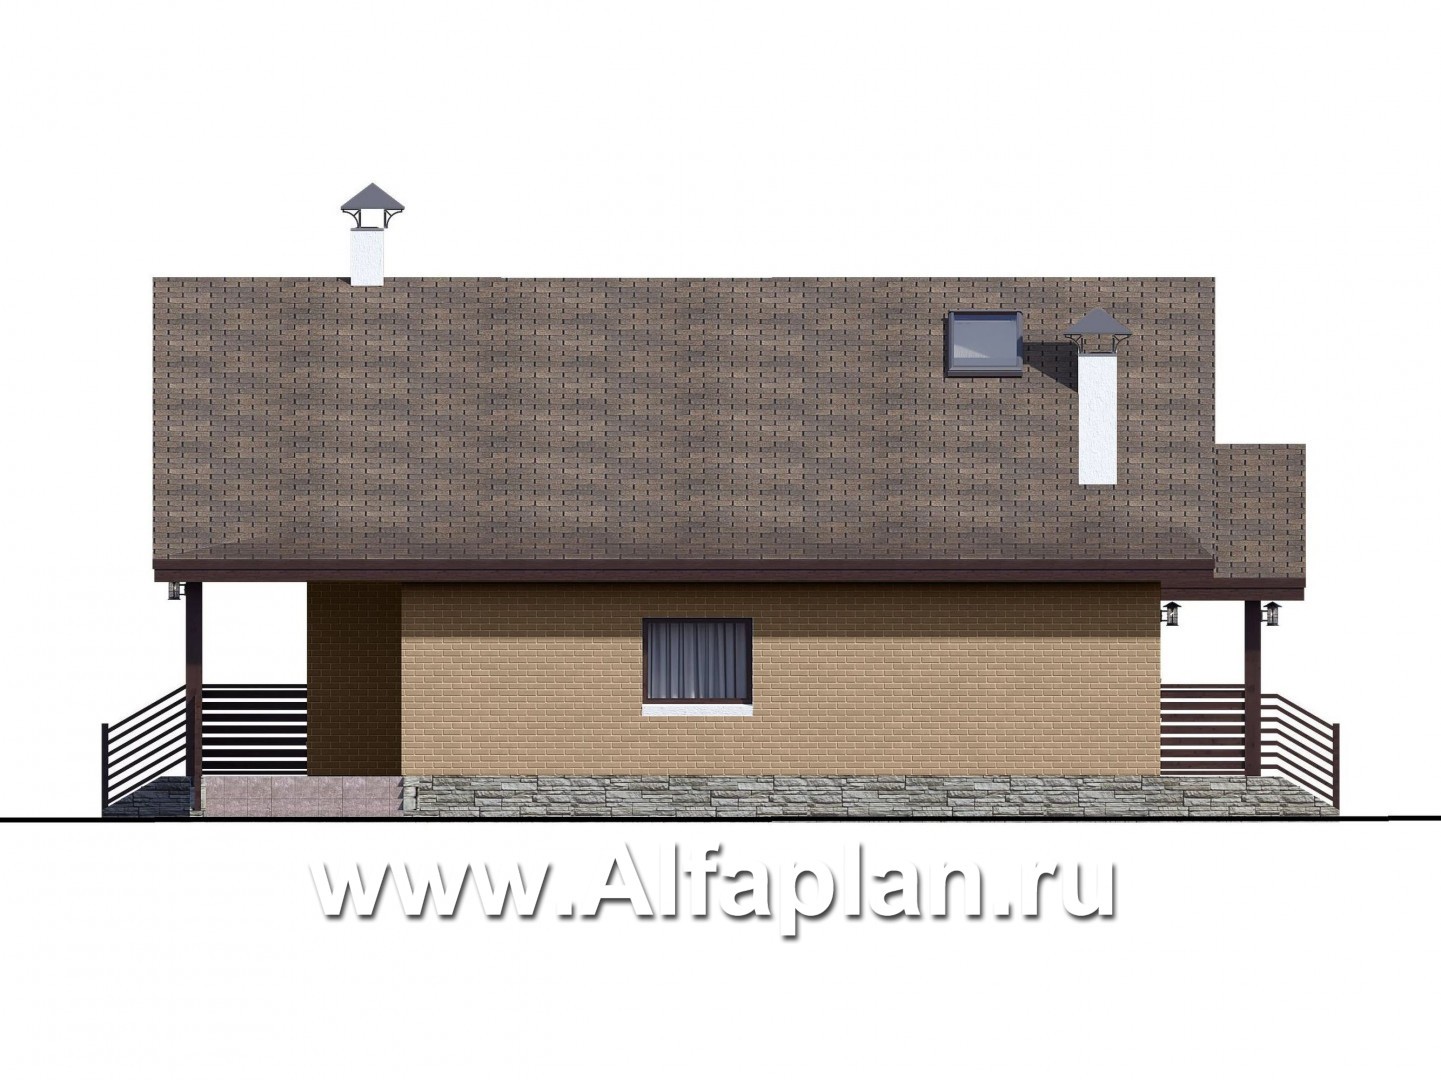 «Моризо» - проект дома с мансардой, планировка с двусветной гостиной и 2 спальни на 1 эт, шале с двускатной крышей - фасад дома